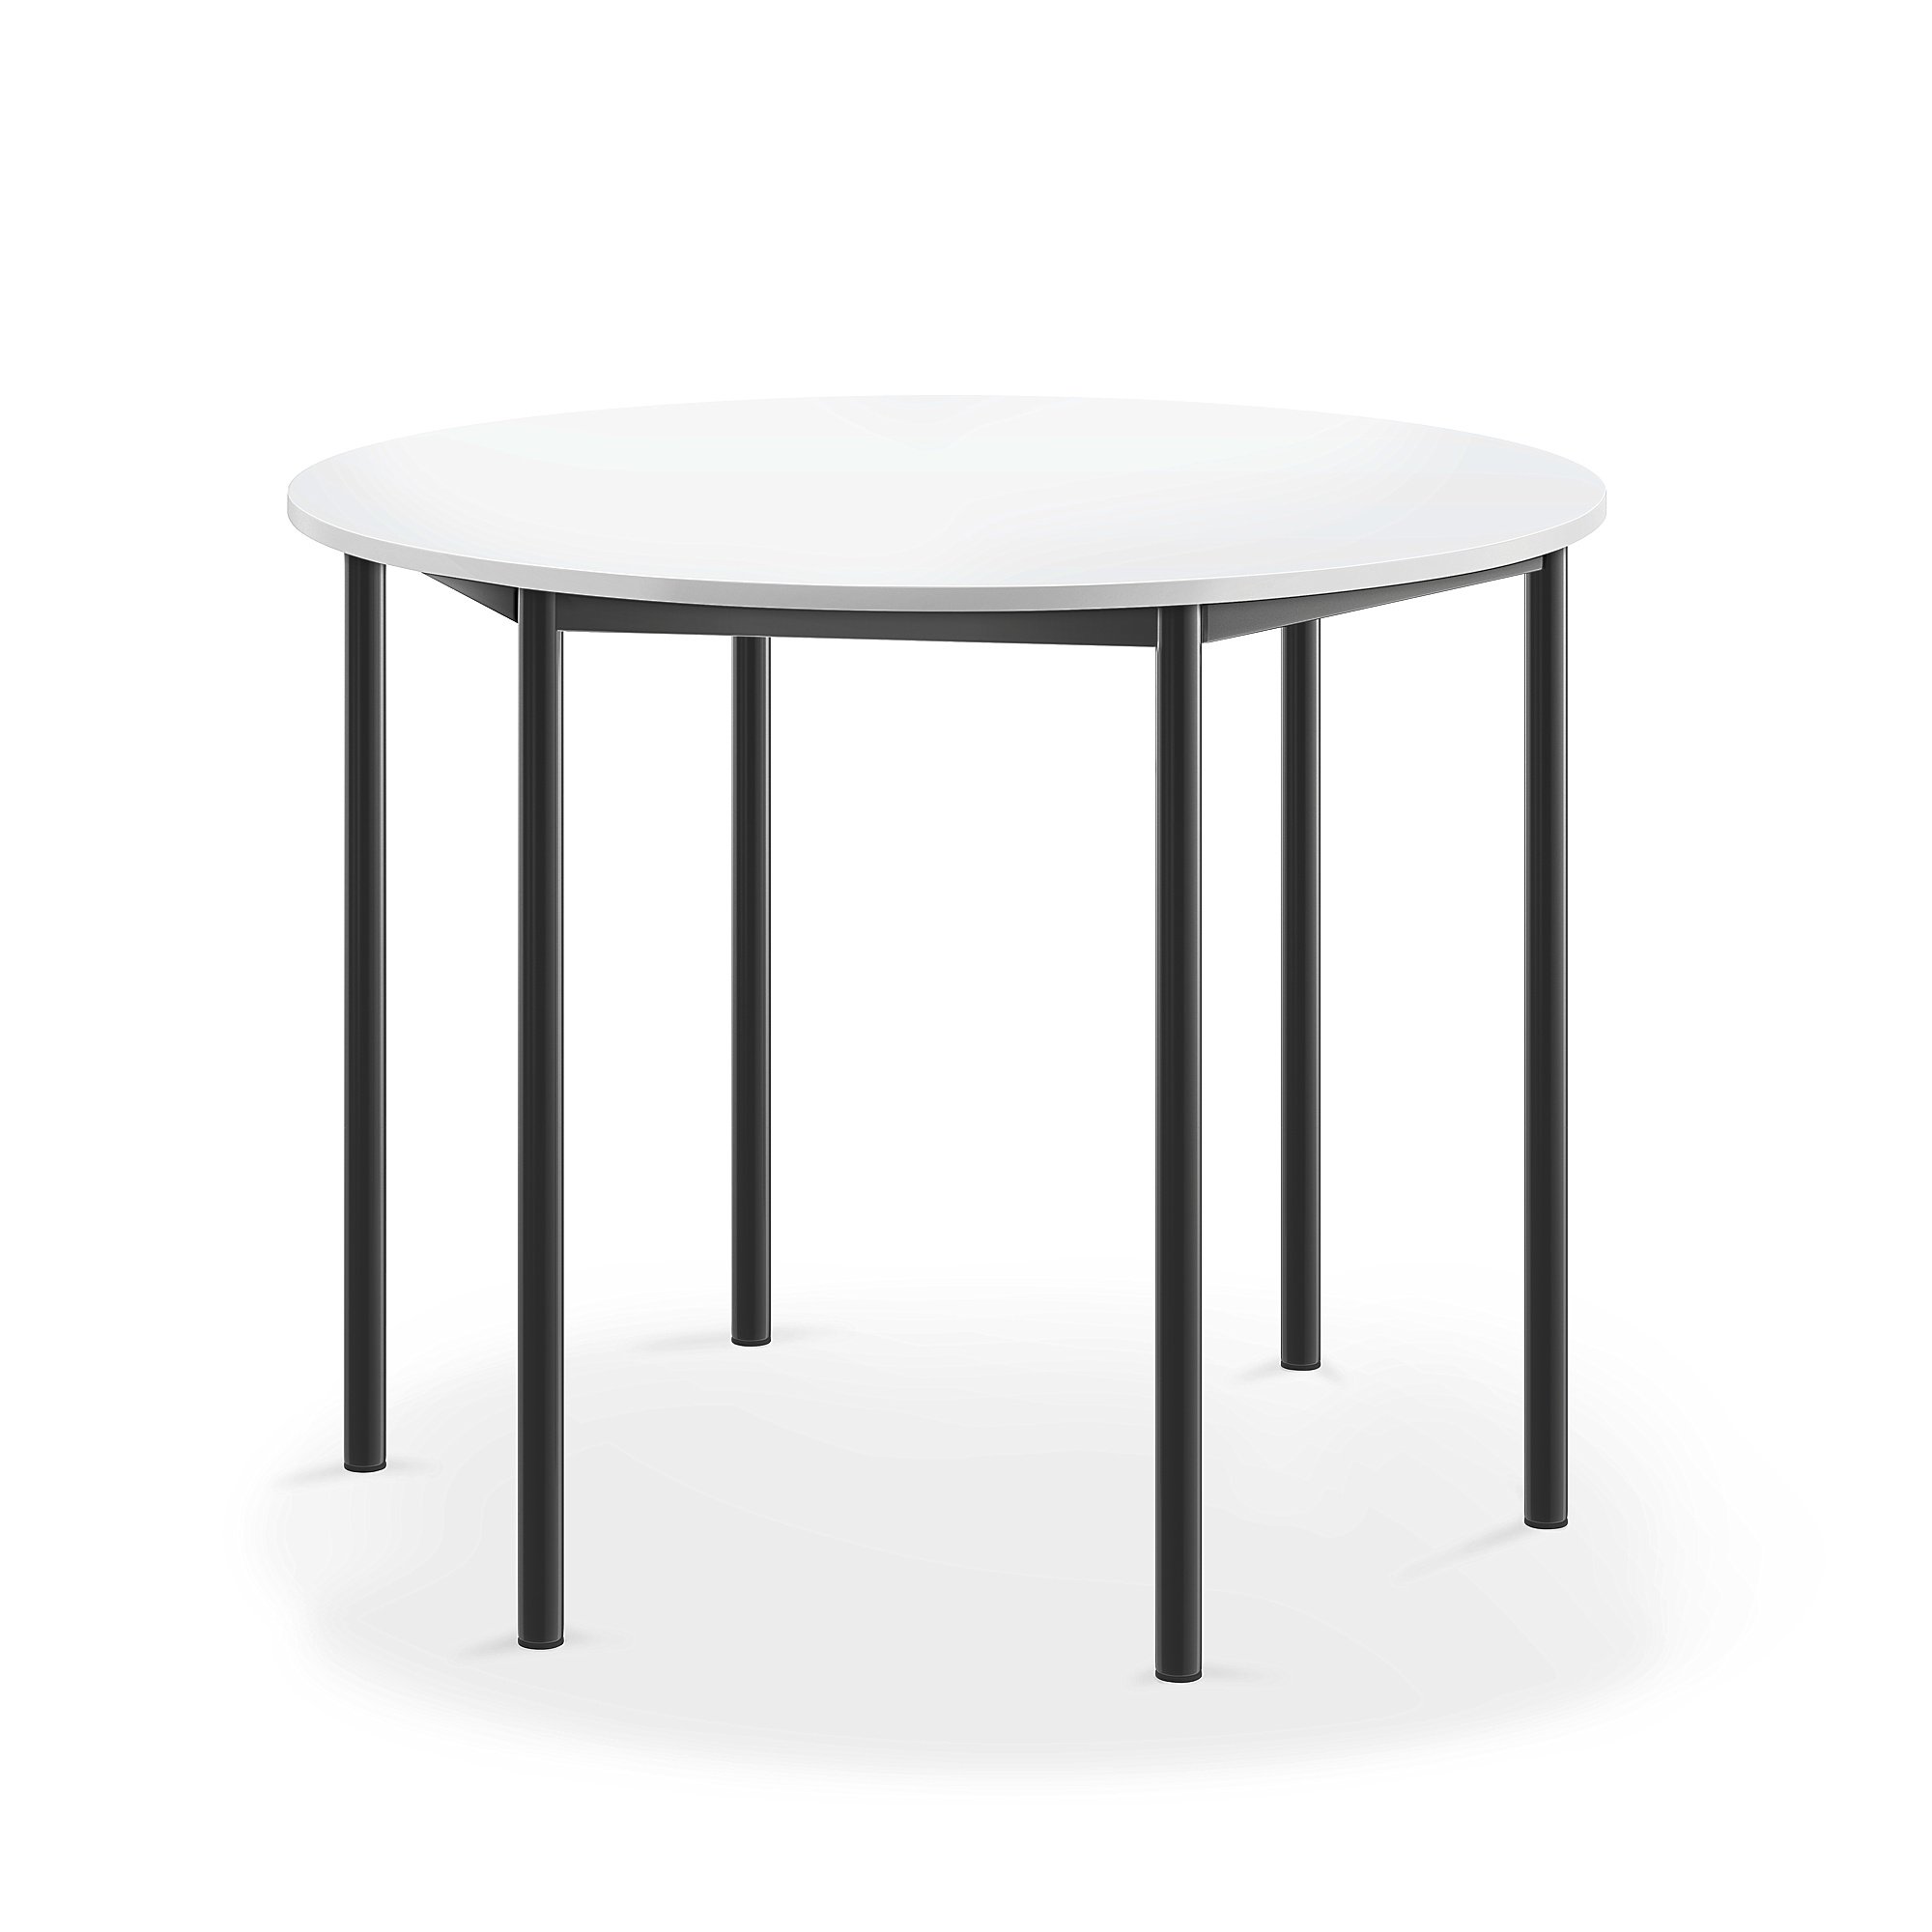 Stůl BORÅS, Ø1200x900 mm, antracitově šedé nohy, HPL deska, bílá